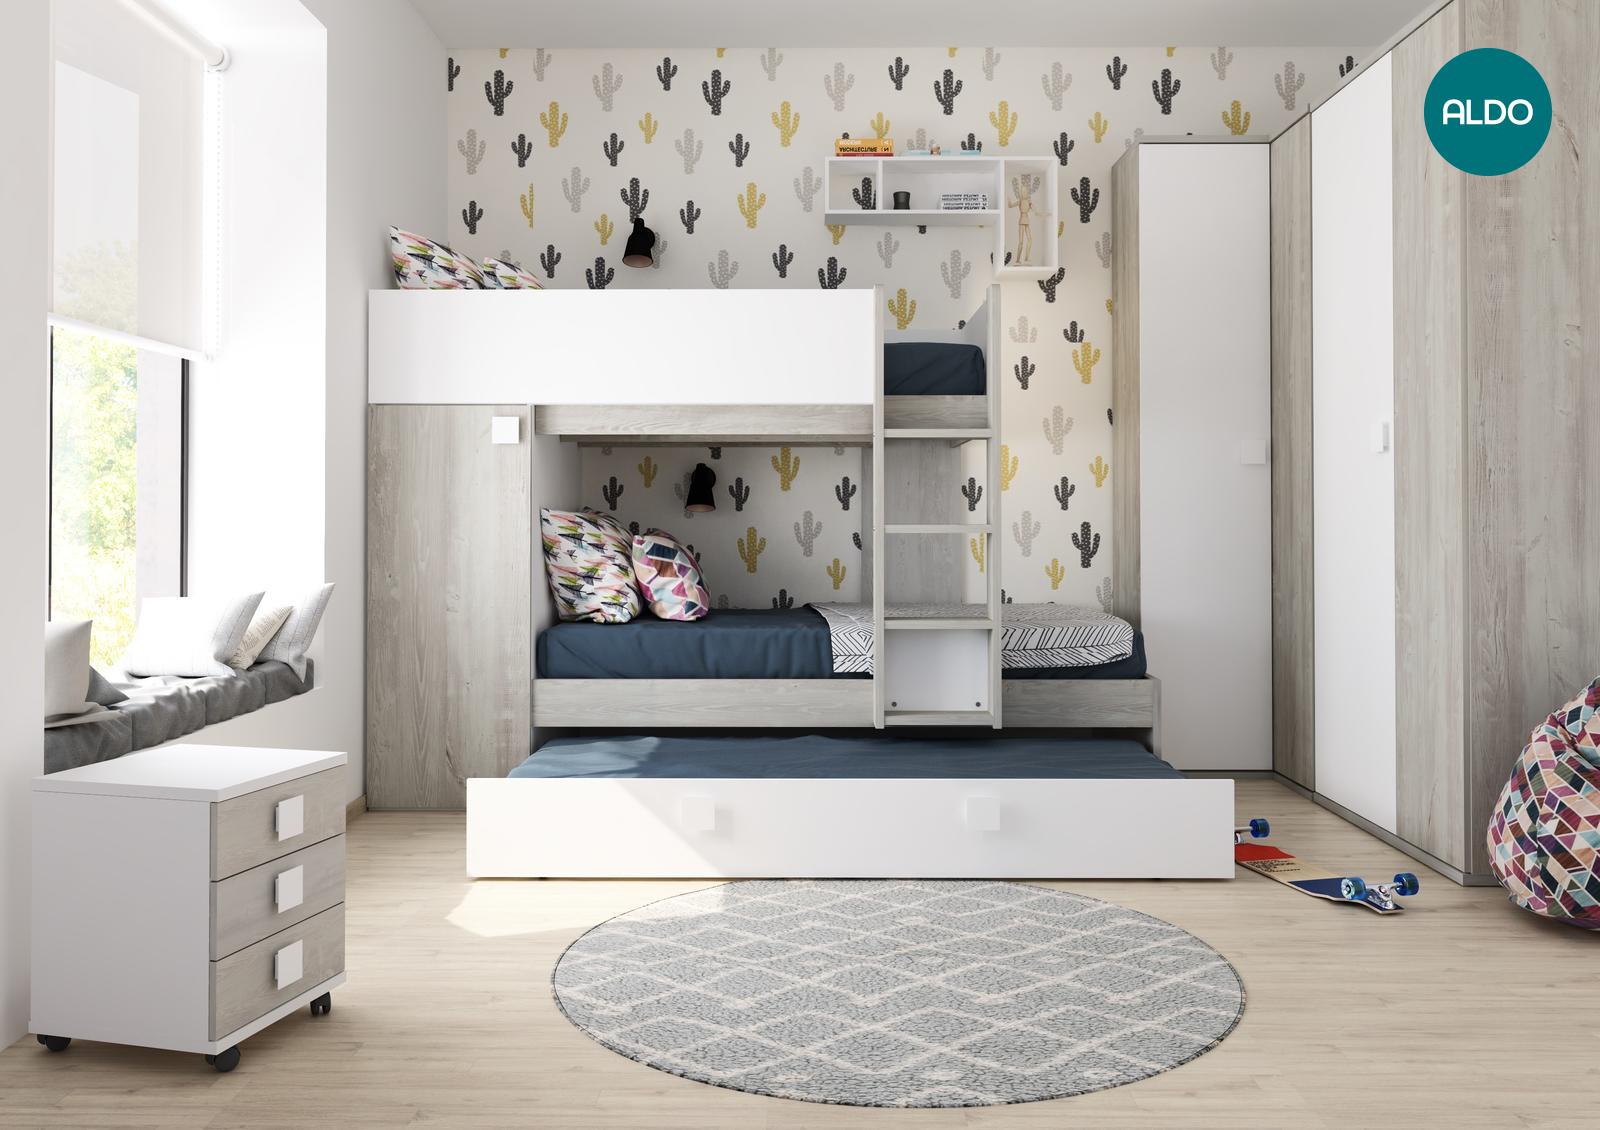 Detská izba pre tri deti - kolekcia Bo7 cascina, white